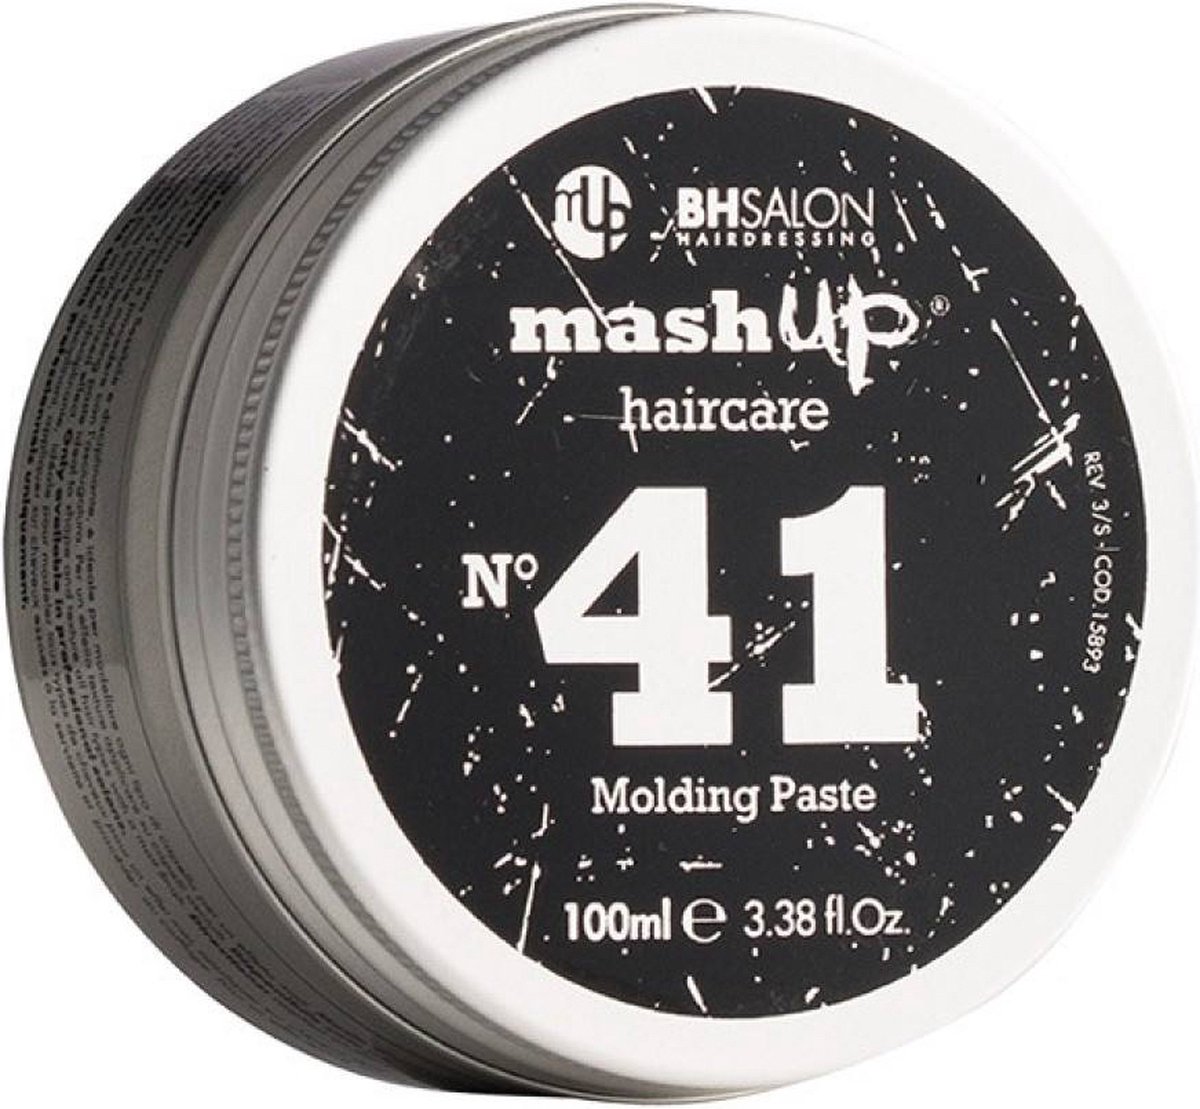 mashUp haircare N° 41 Molding Paste 100ml